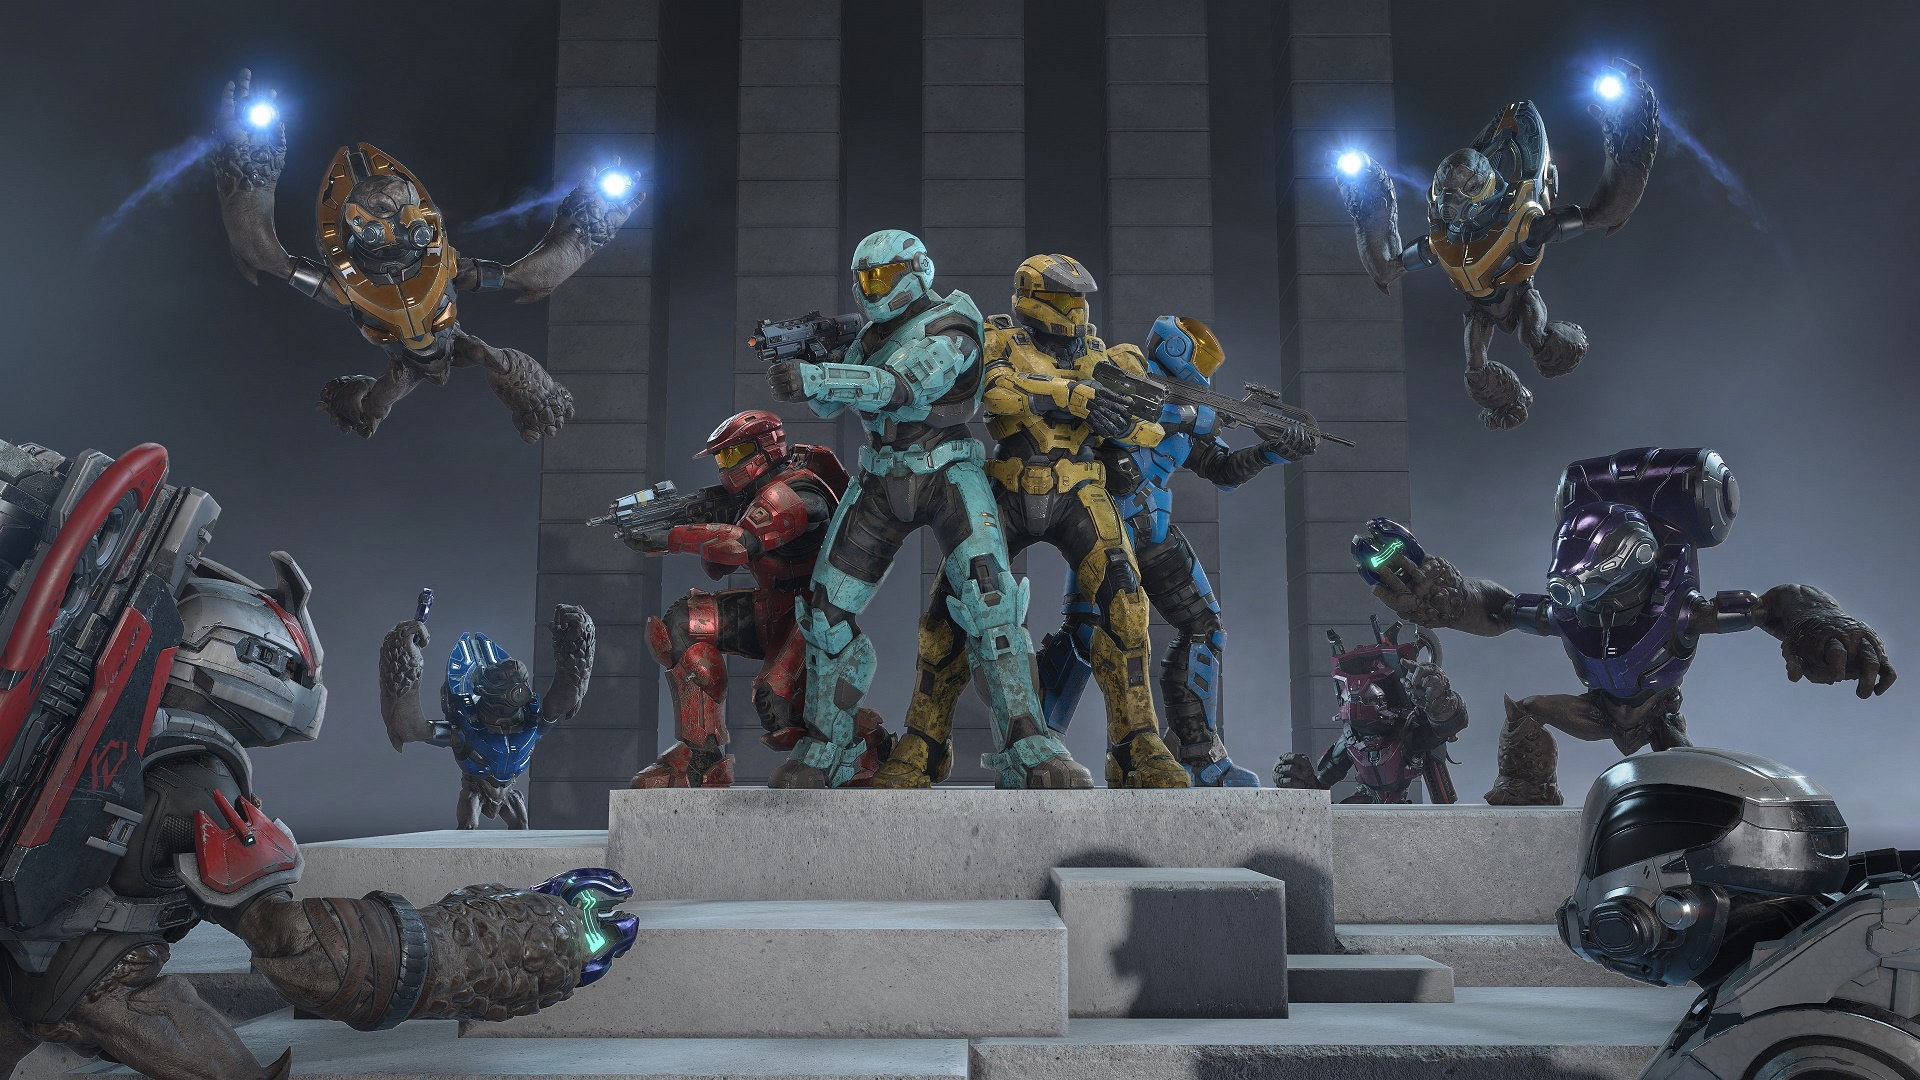 Halo Infinite-Bild des Gruntpocalypse-Modus, das Spartaner im Kampf gegen Grunts zeigt